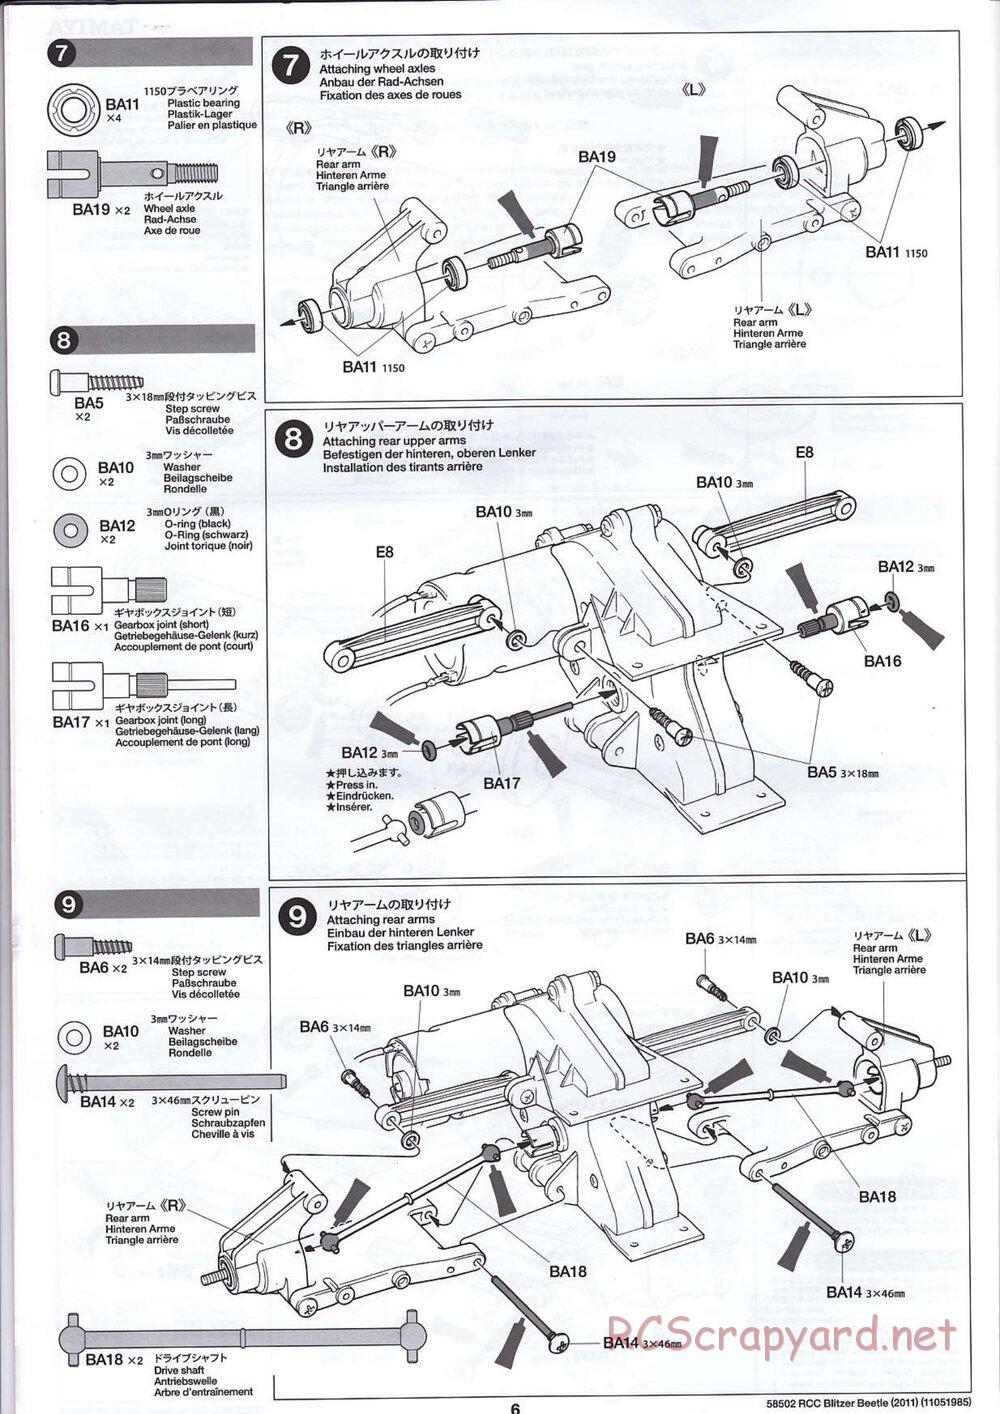 Tamiya - Blitzer Beetle 2011 - FAL Chassis - Manual - Page 6